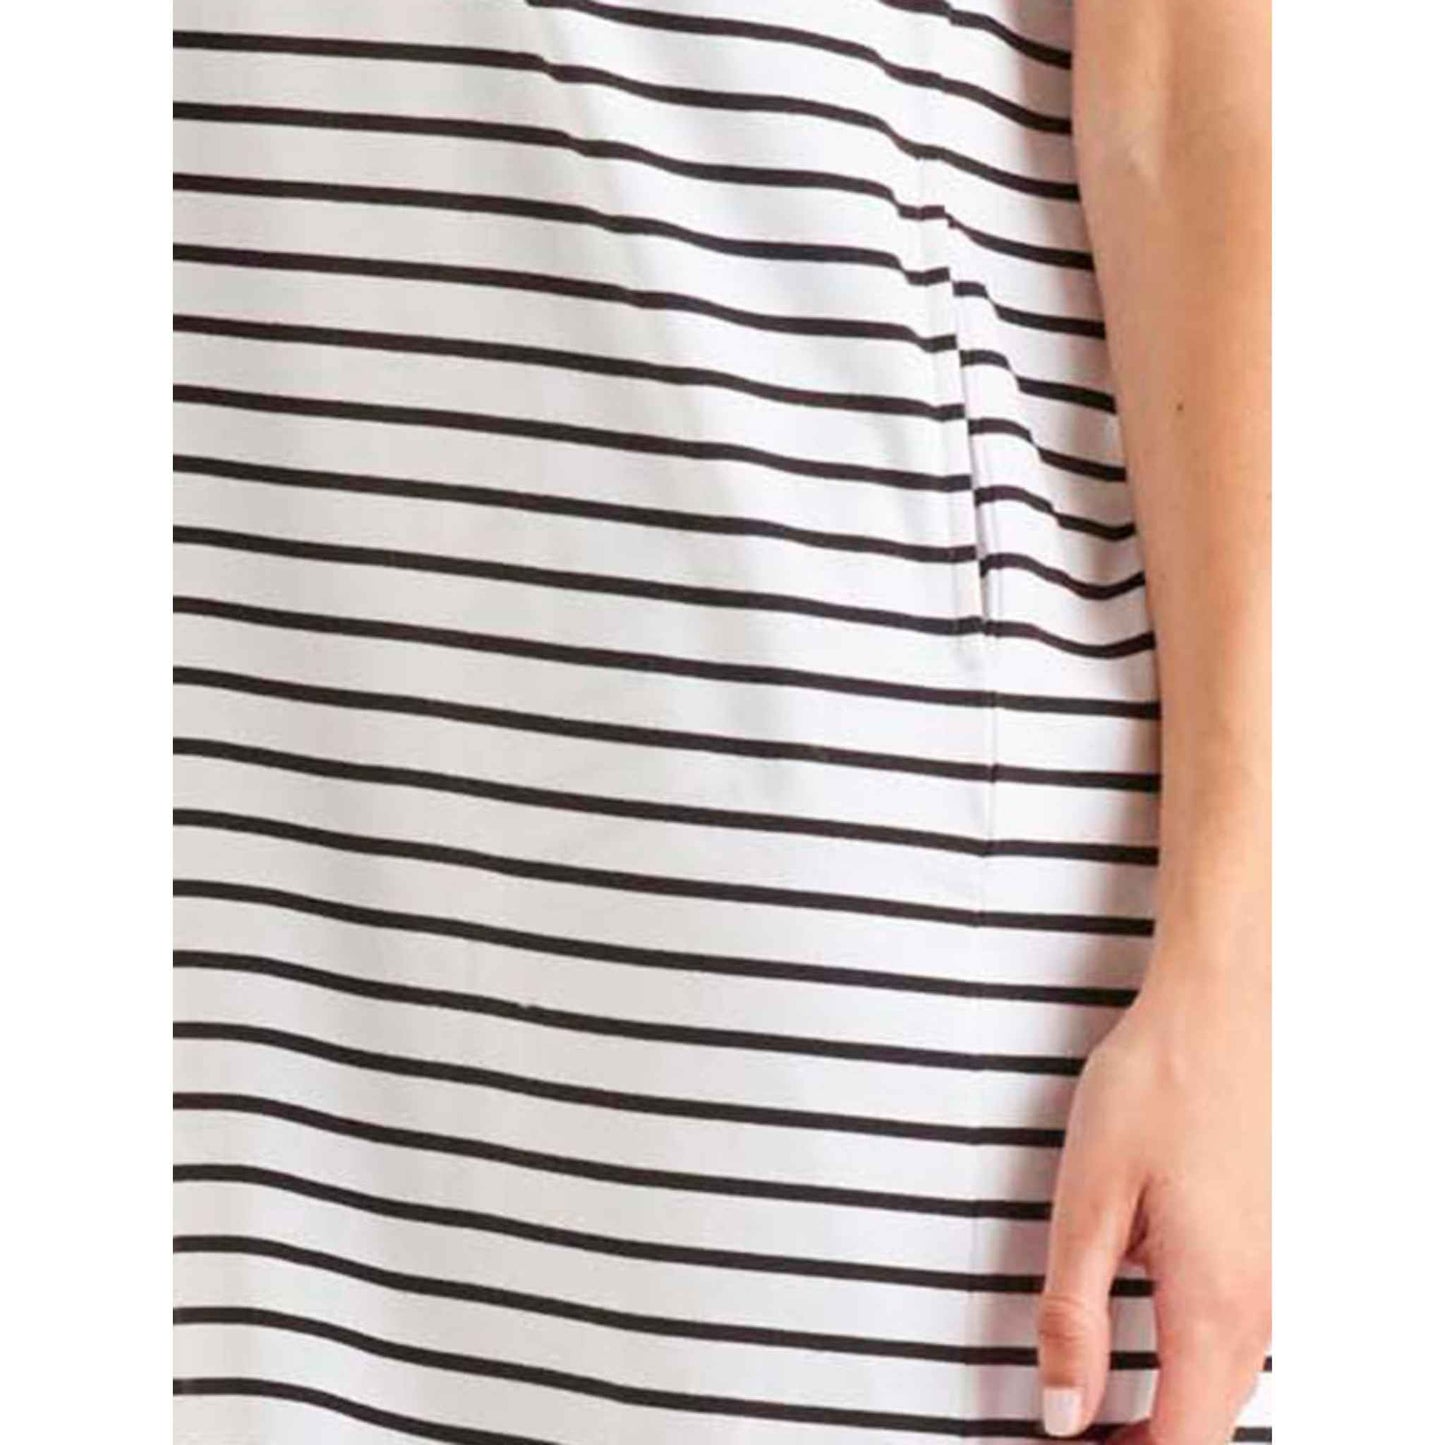 Zena T-Shirt Dress - White/Black Stripe